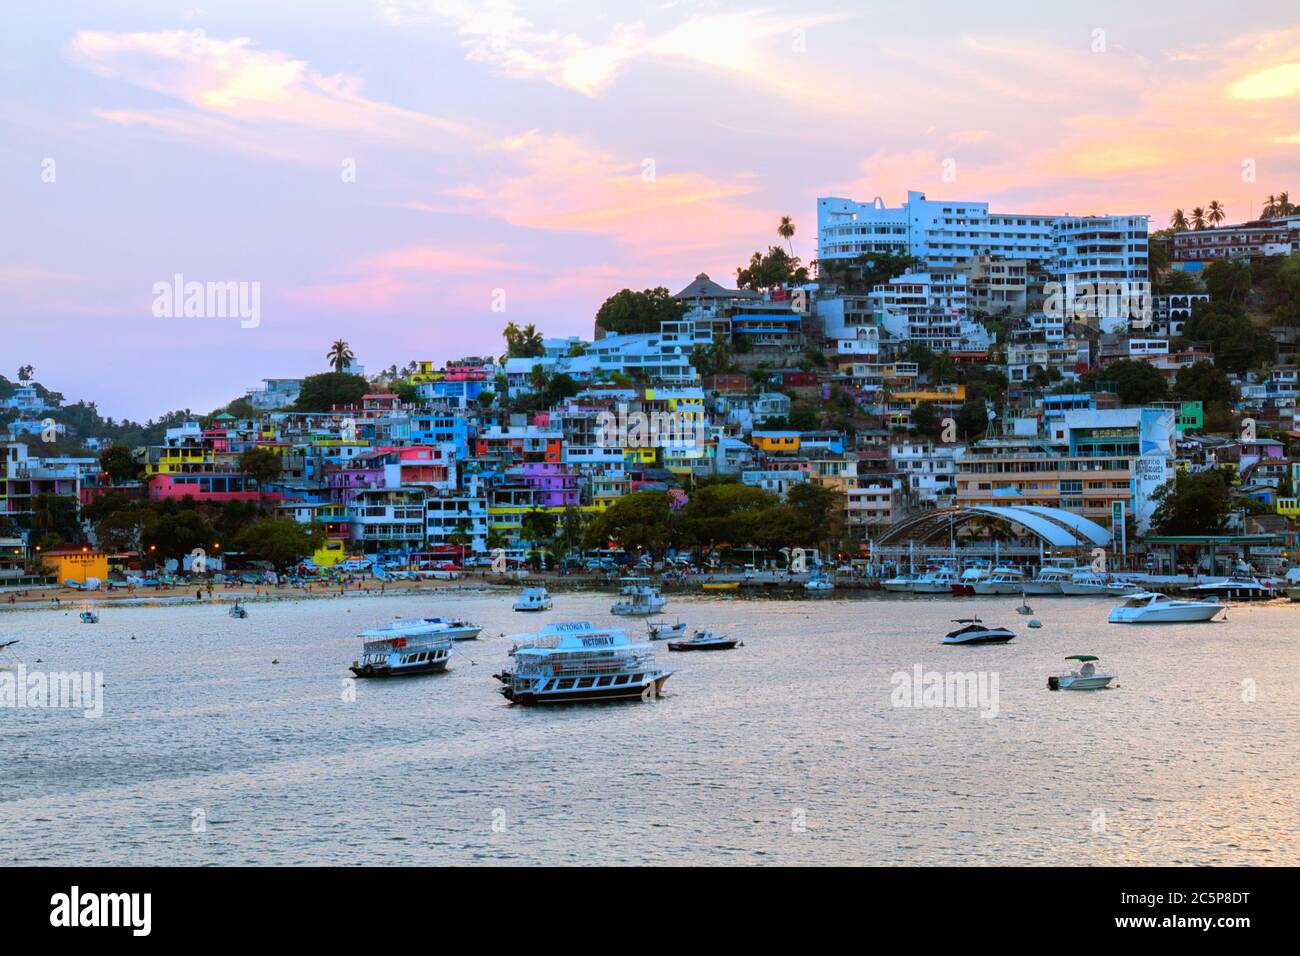 acapulco, Familie am Strand, Hotels am Wasser acapulco, mexikanischer Strand, genießen am Strand, Tourist am Strand, acapulco Slums, mexikanische Slums, mexiko, acapulco Stockfoto